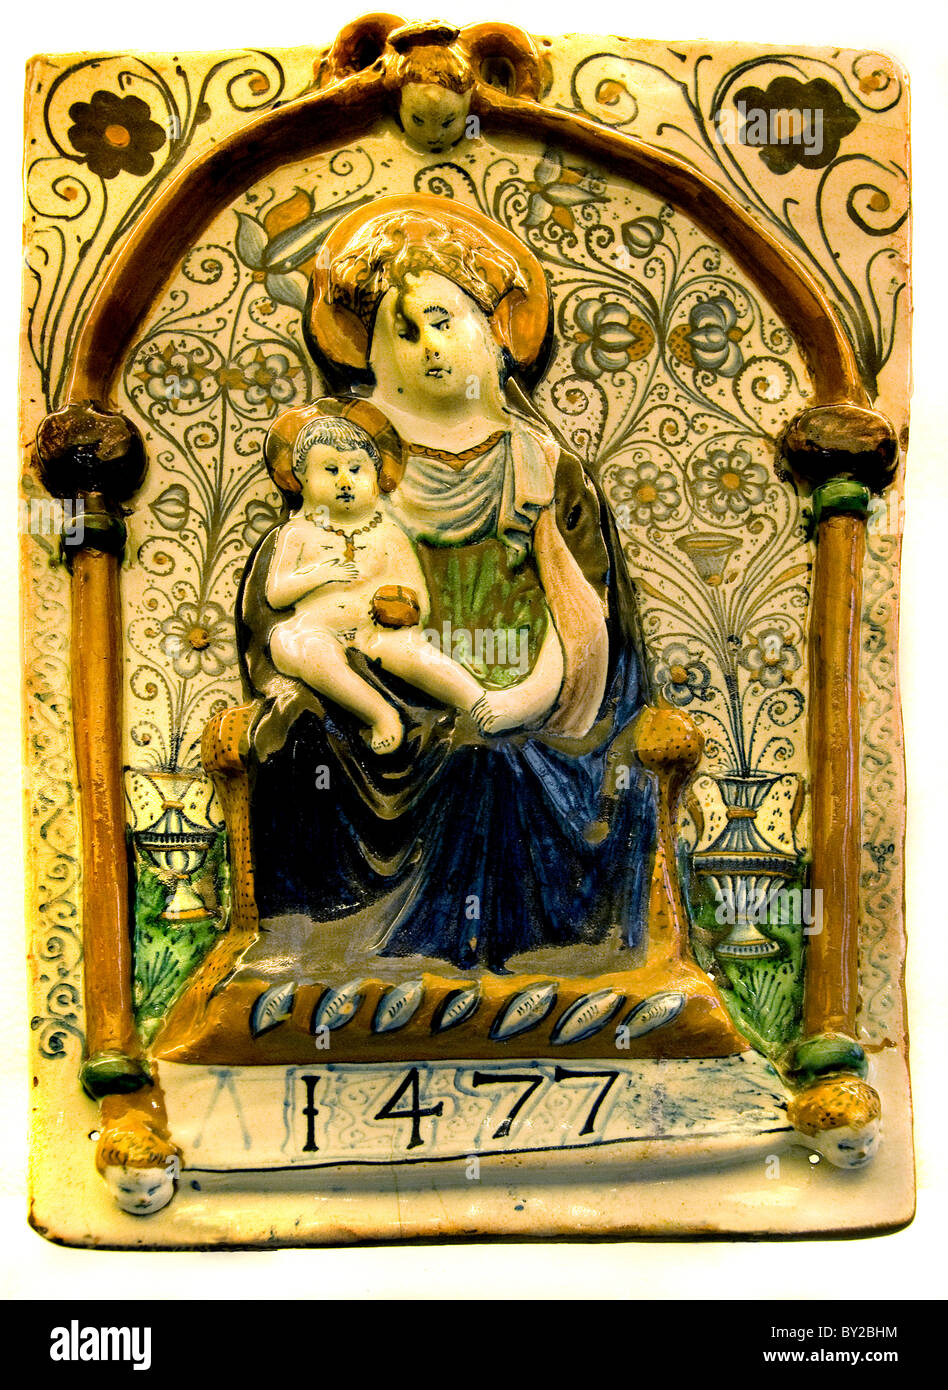 Maria Cristo Gesù 1477 cattolica Faenza Italia Italiano della placca in ceramica in maiolica Medioevo medievale Foto Stock